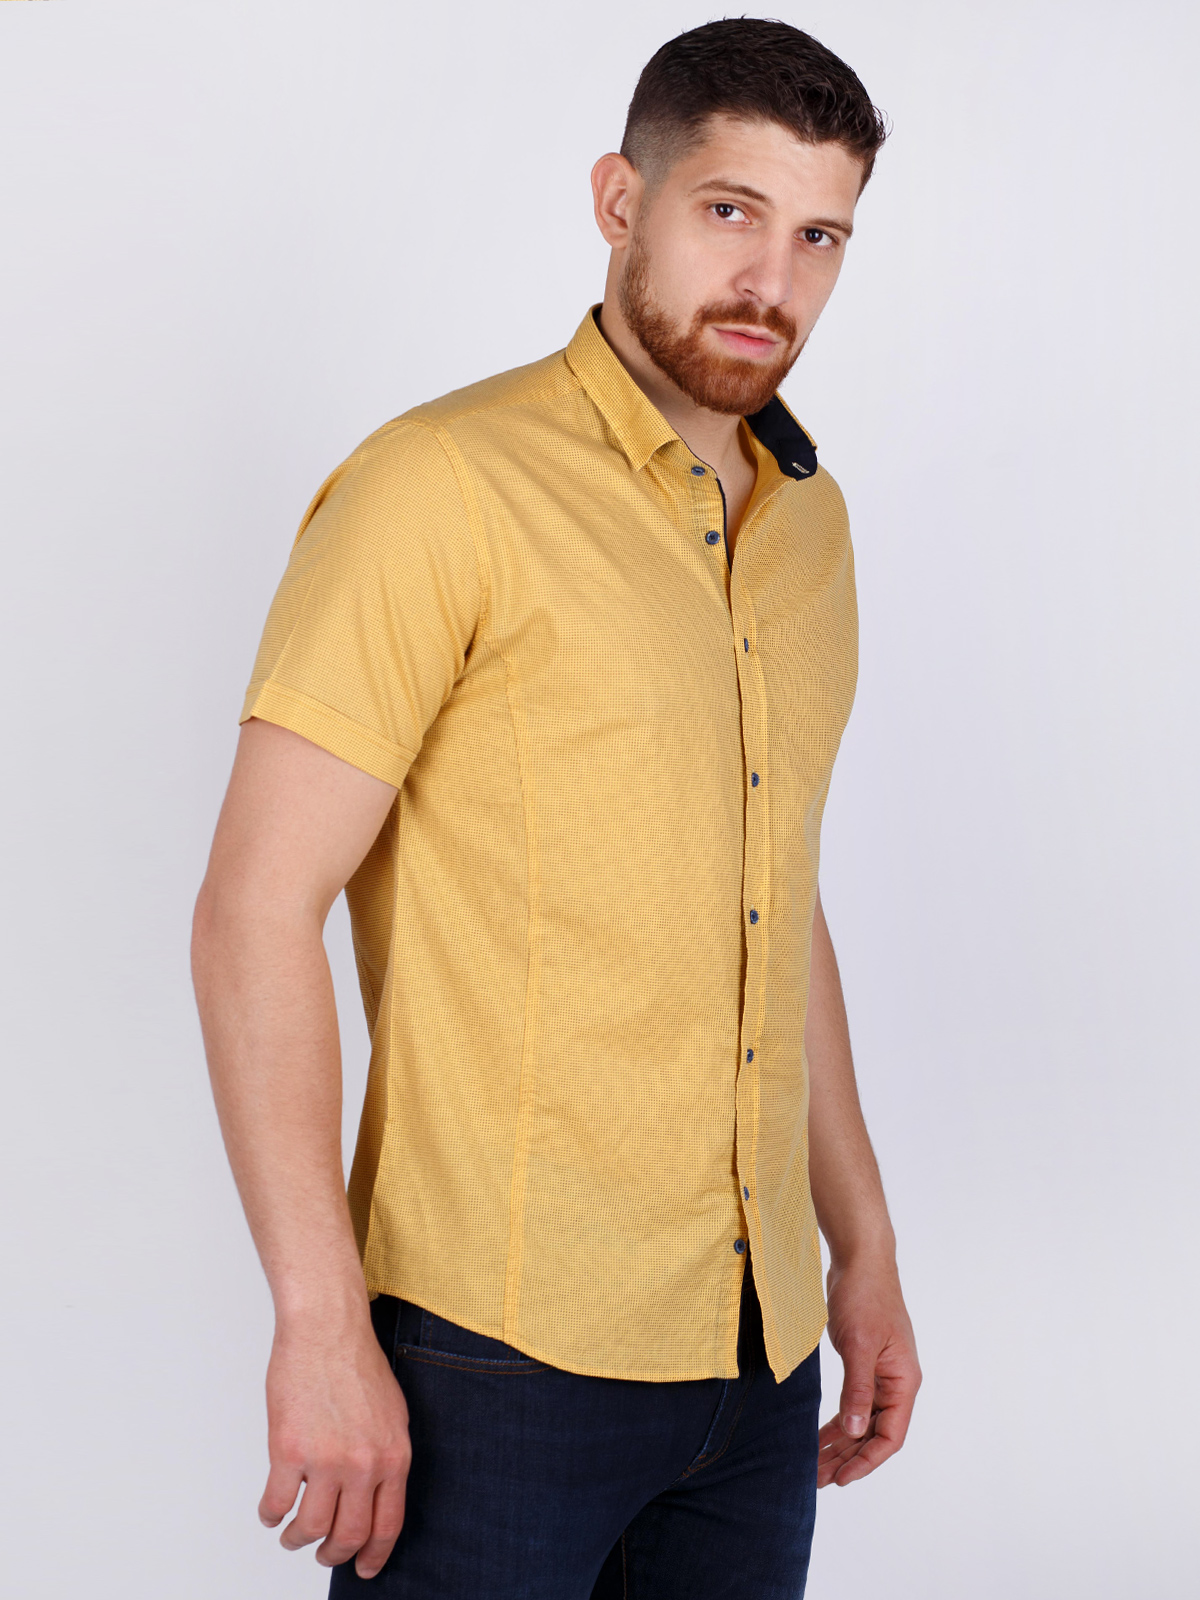 Κίτρινο πουκάμισο με ψιλά γράμματα - 80221 € 21.93 img2